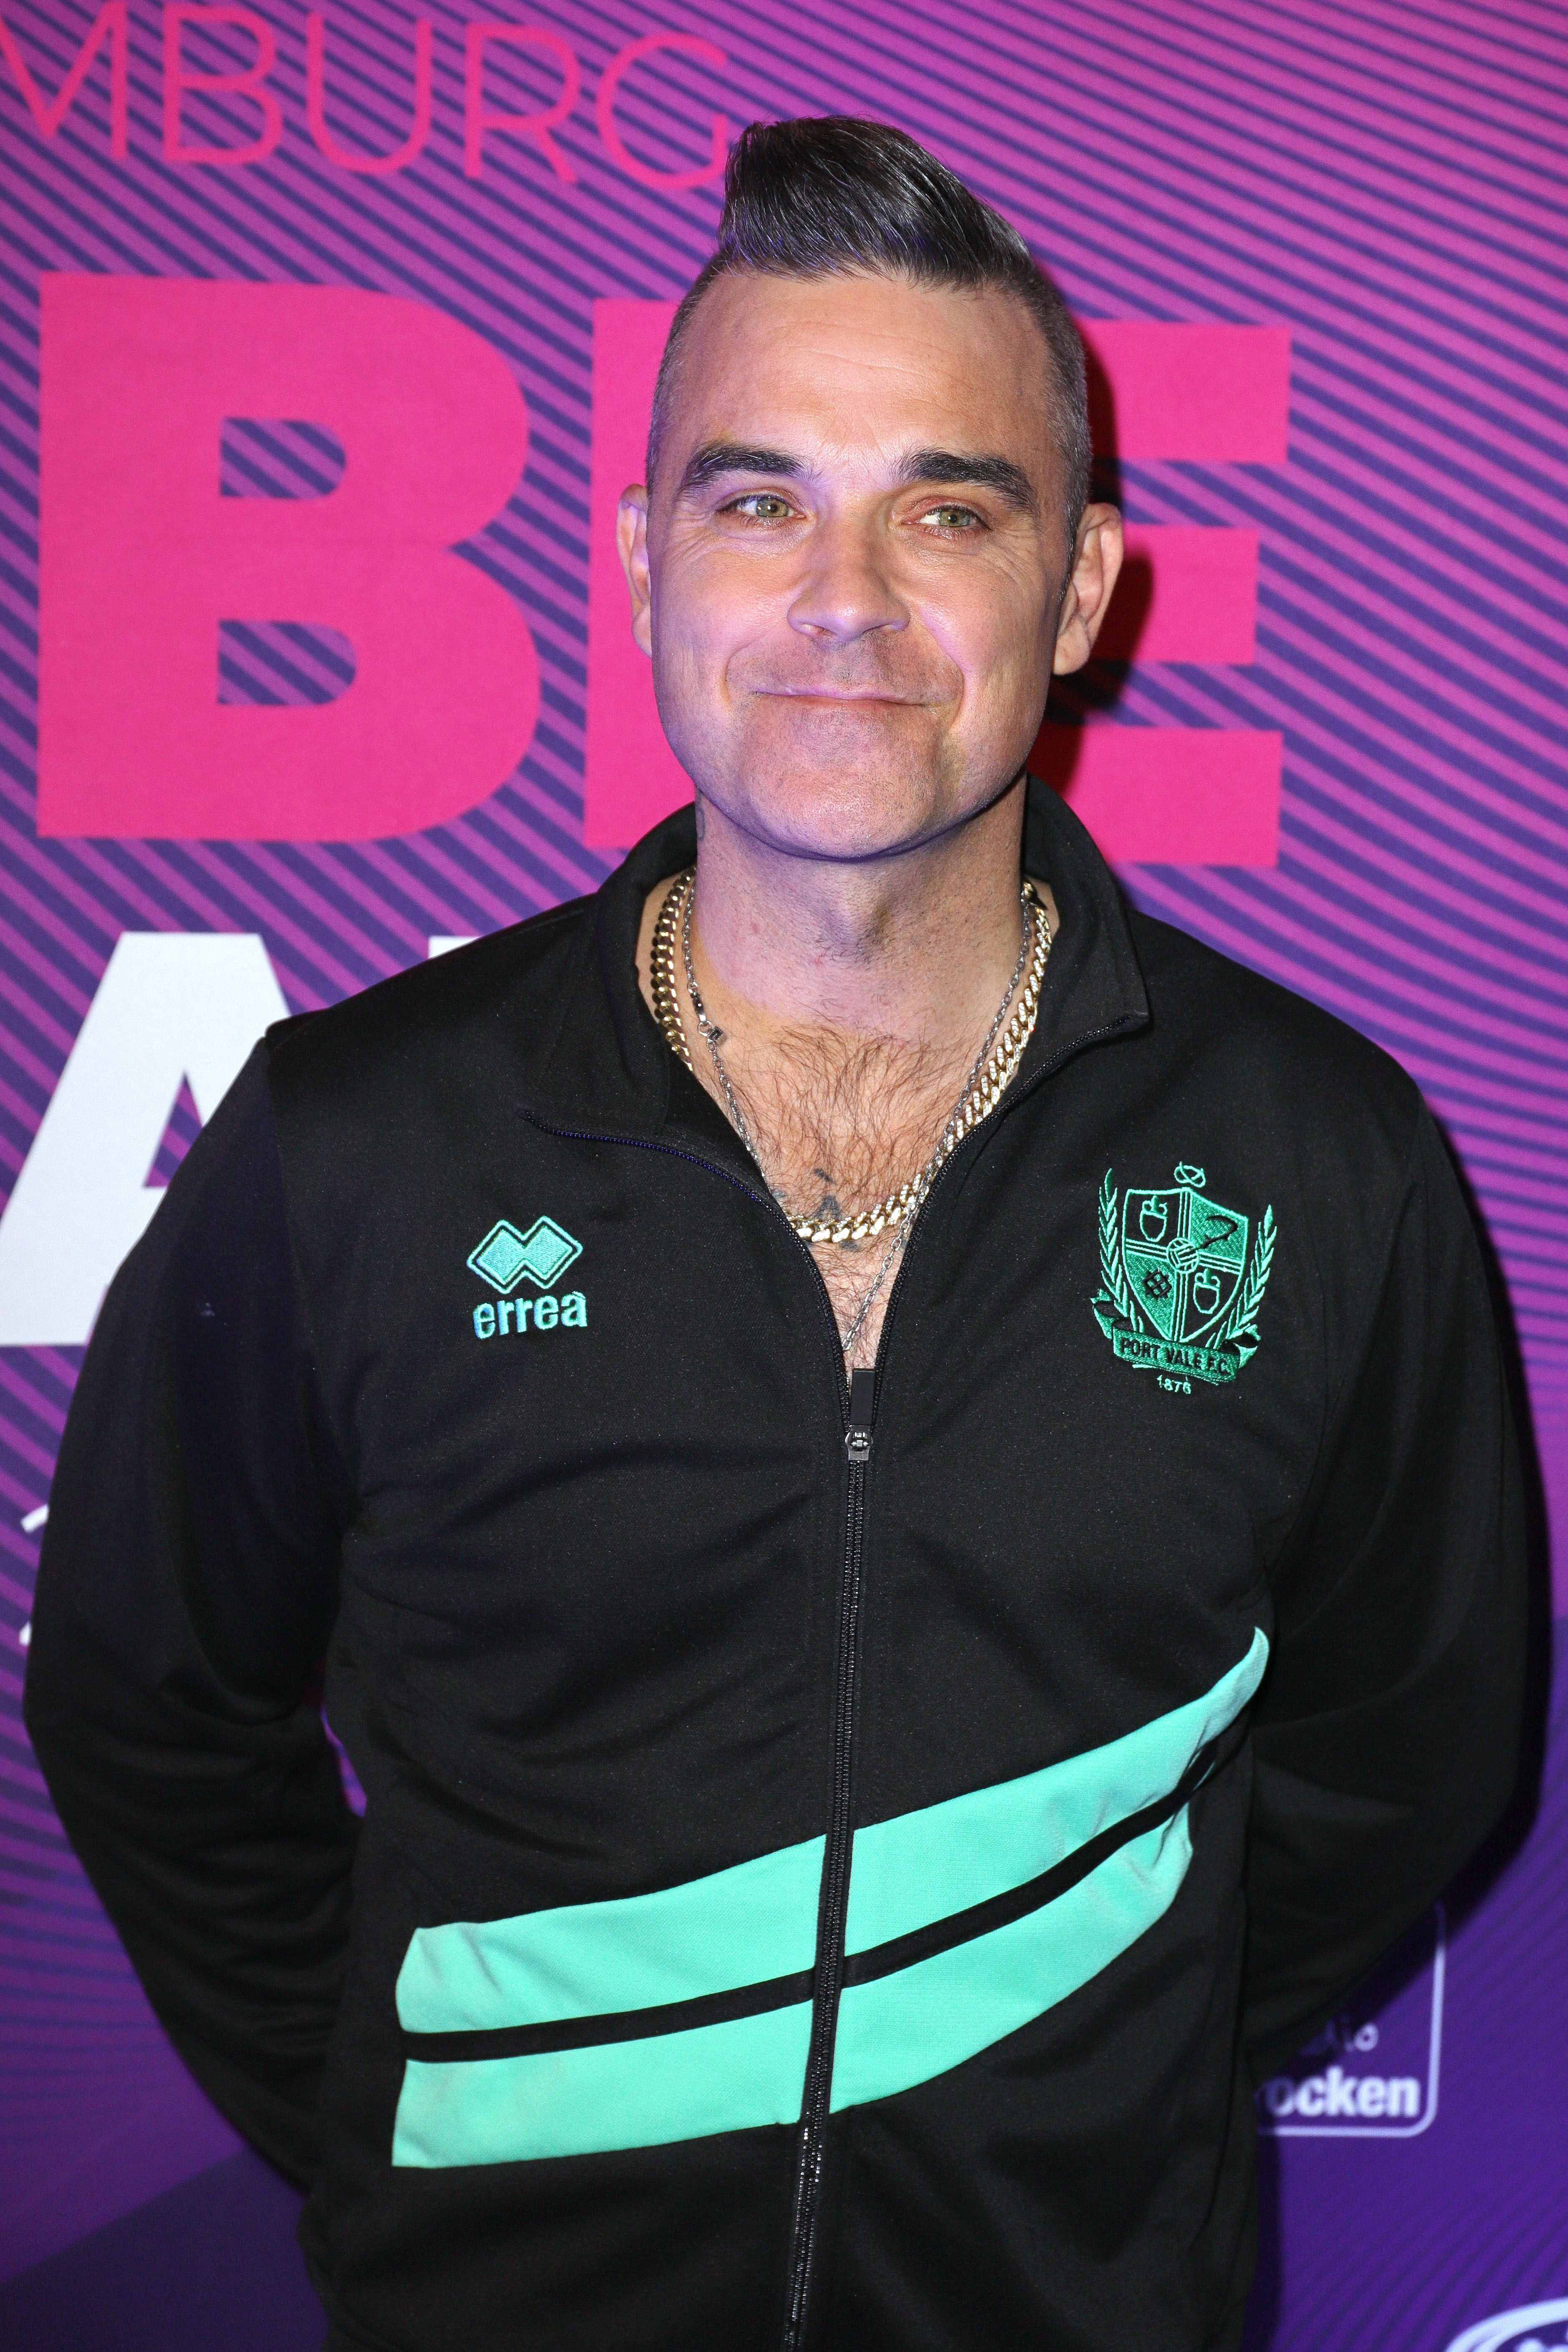 También se le pedirá a Robbie Williams que participe.